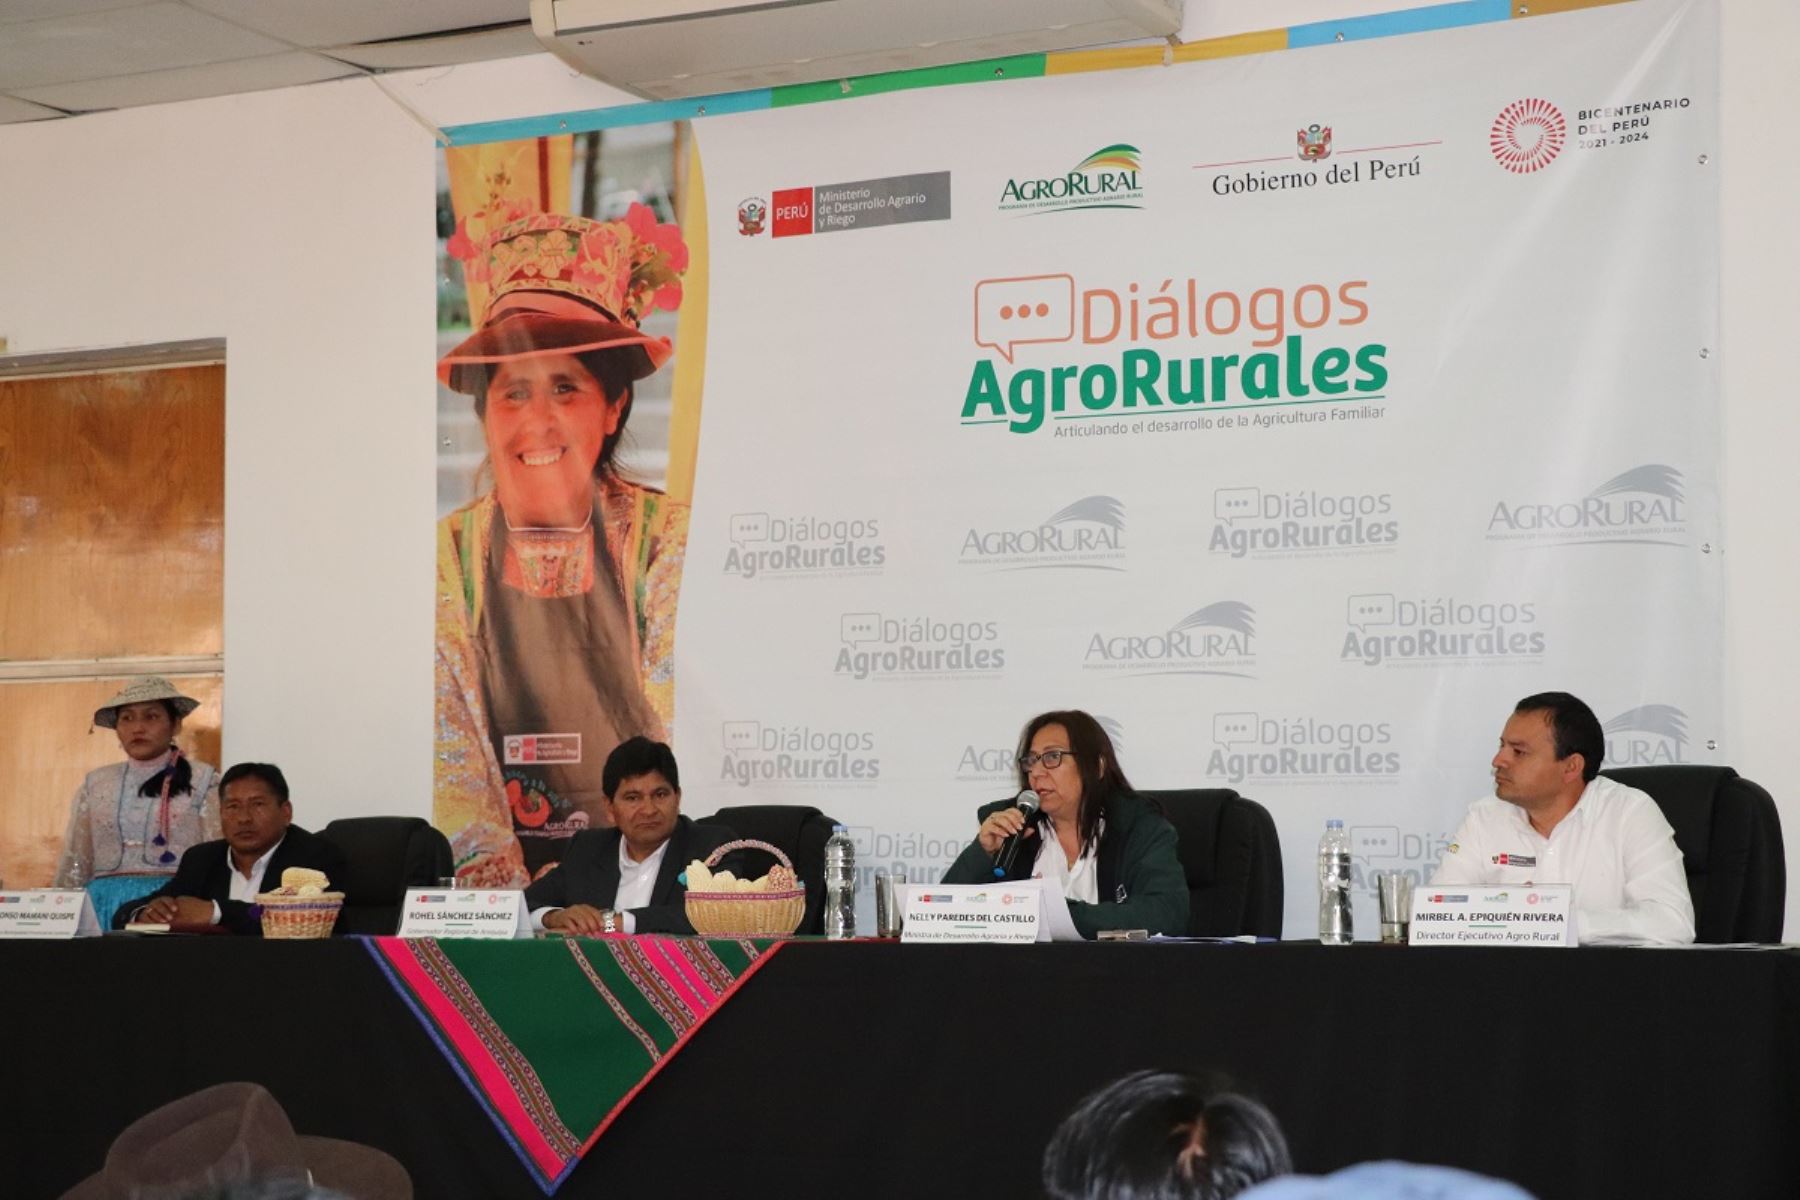 La ministra de Desarrollo Agrario y Riego, Nelly Paredes, inauguró hoy "Diálogos Agro Rurales" en la región Arequipa. Foto: Cortesía.